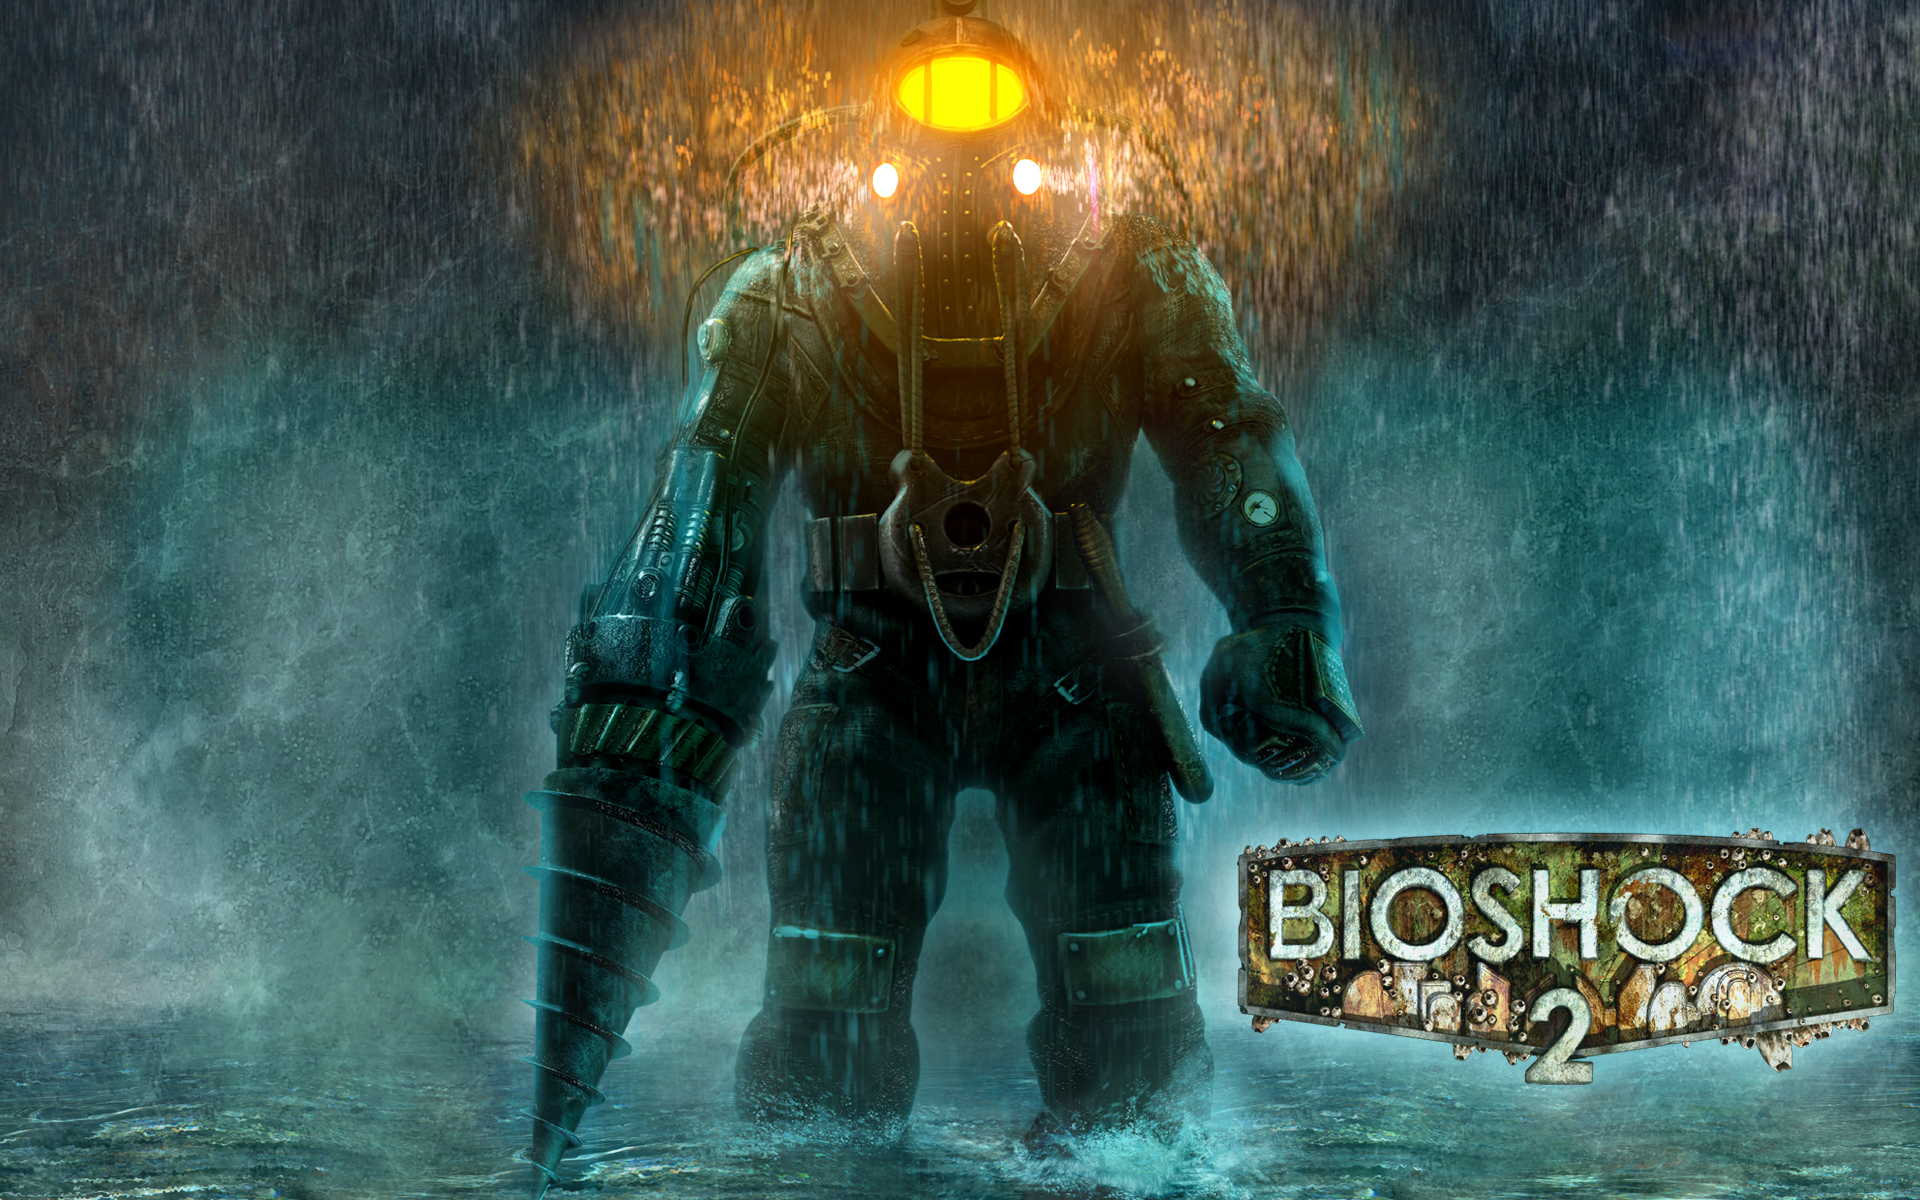 personajes-de-bioshock-2-bioshock-wiki-fandom-powered-by-wikia